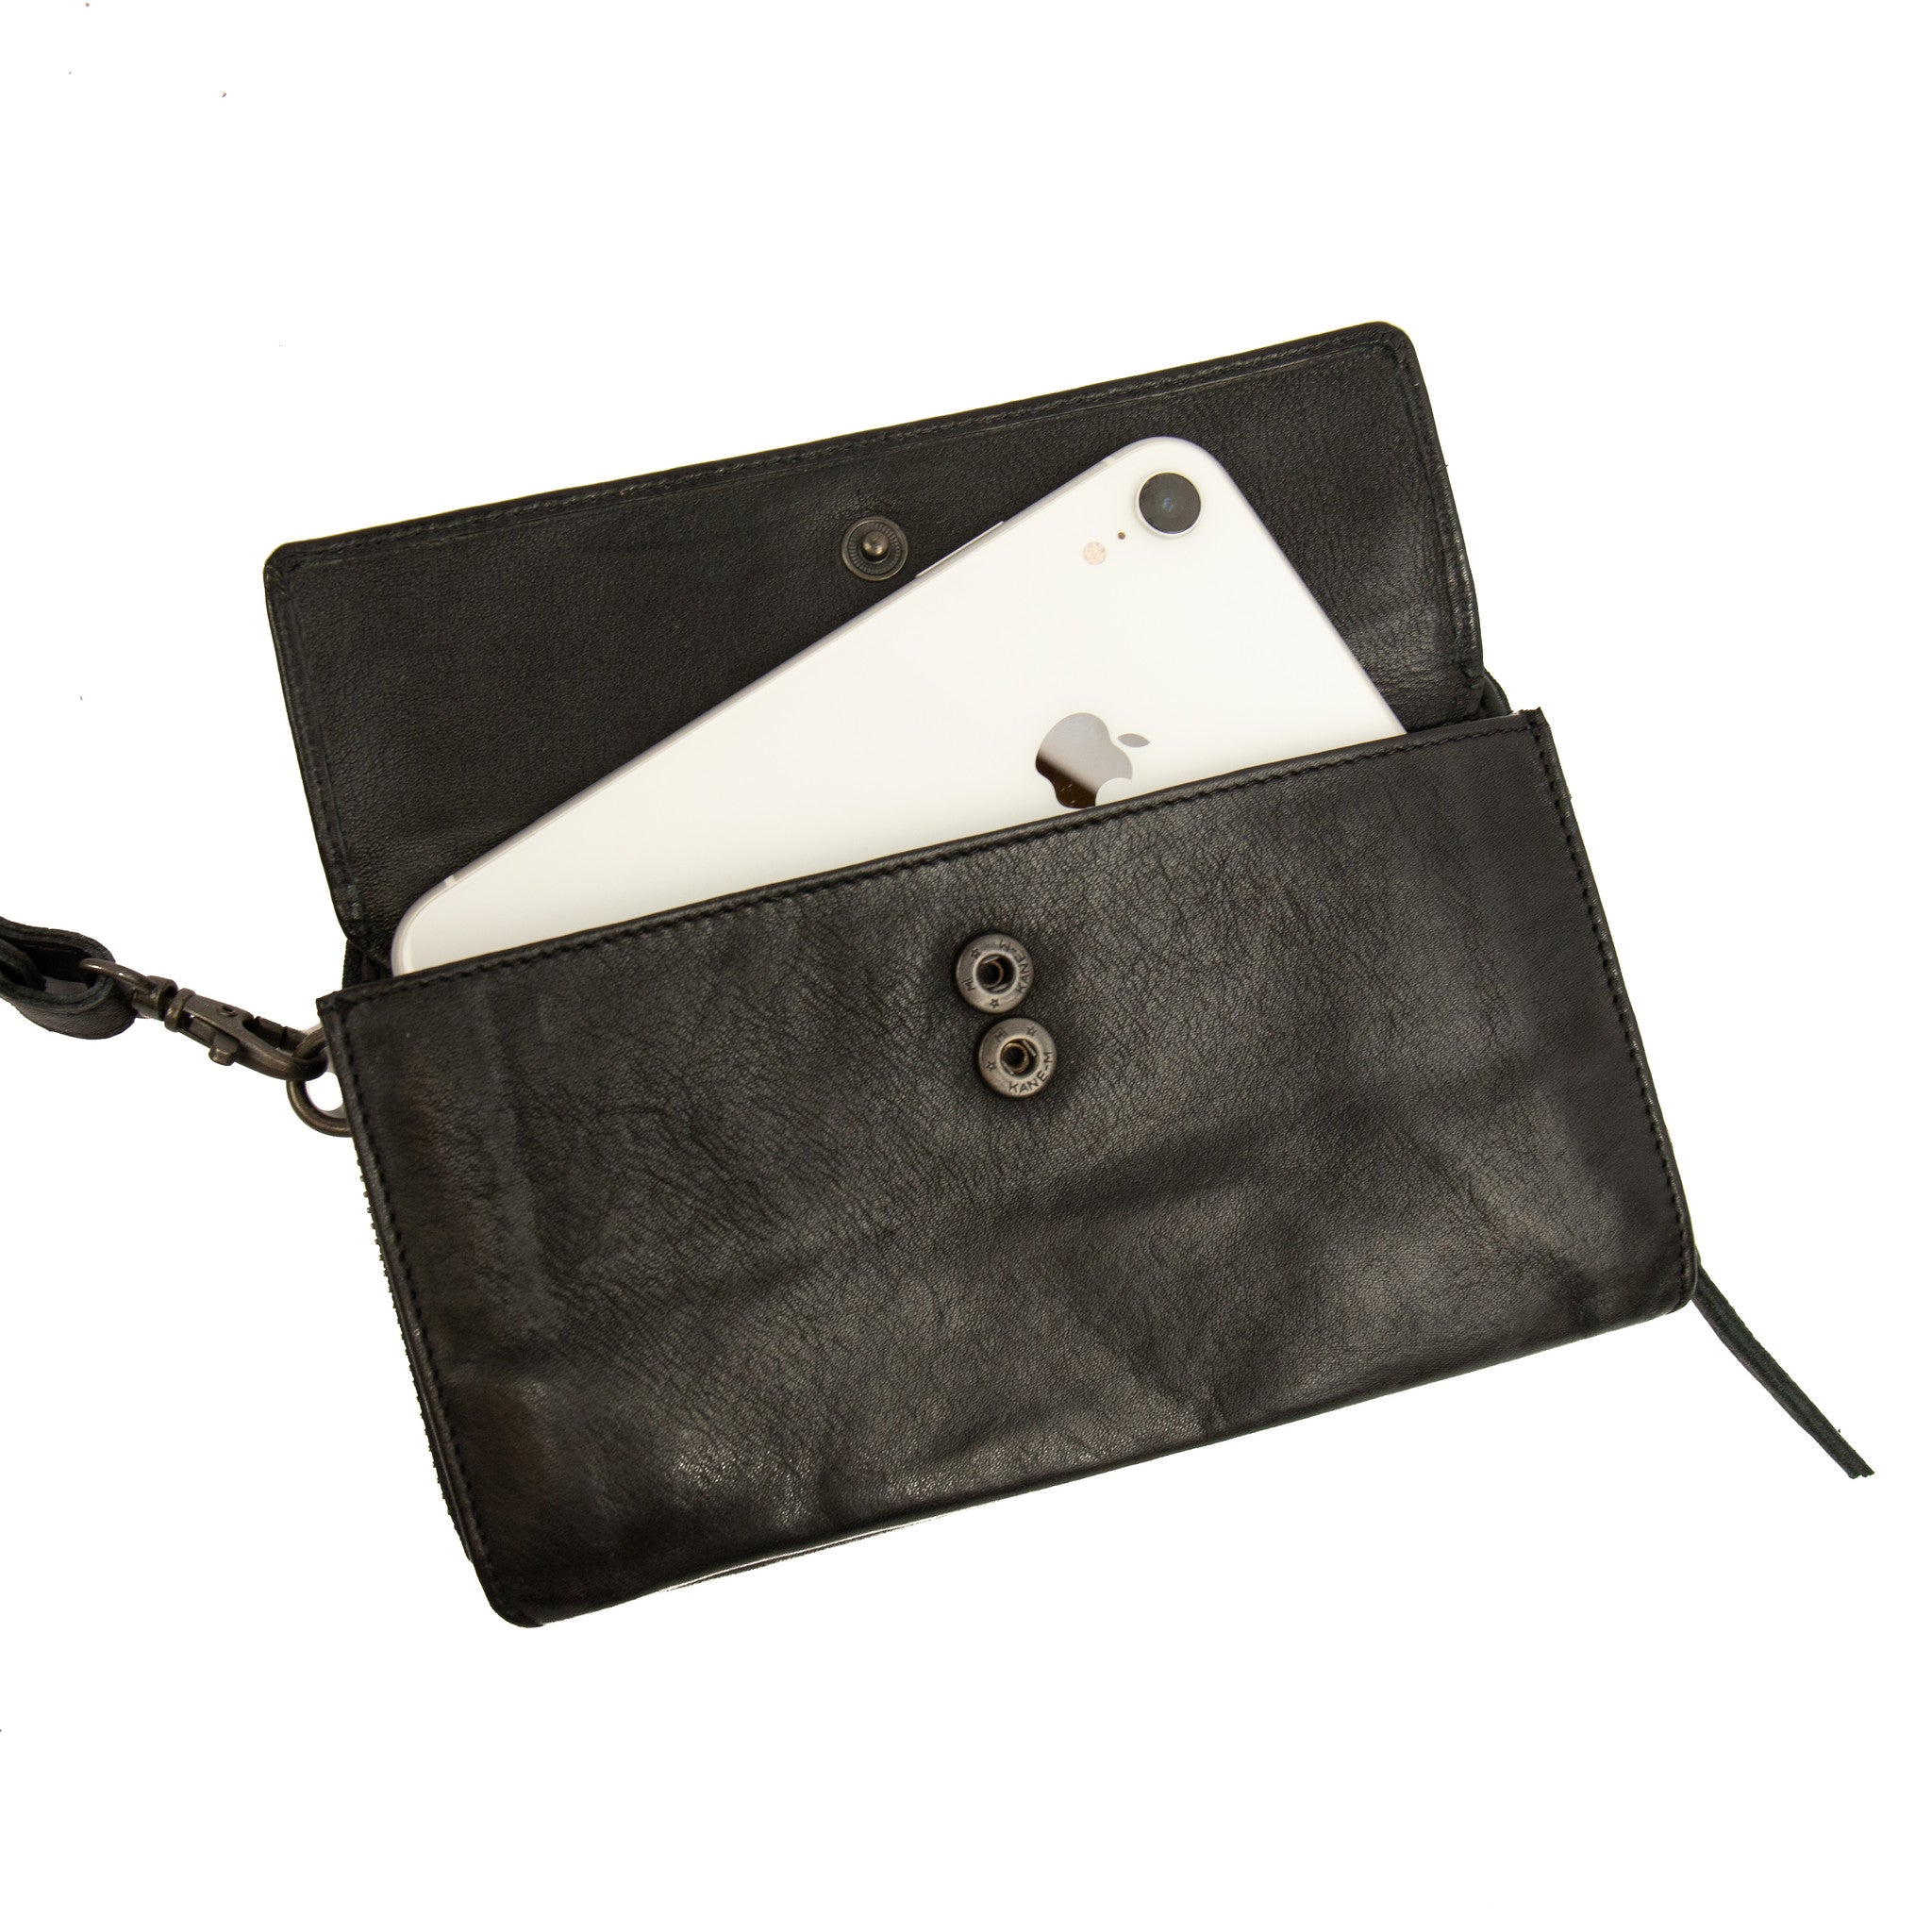 Phone bag 'Lilian' black - CP 6038